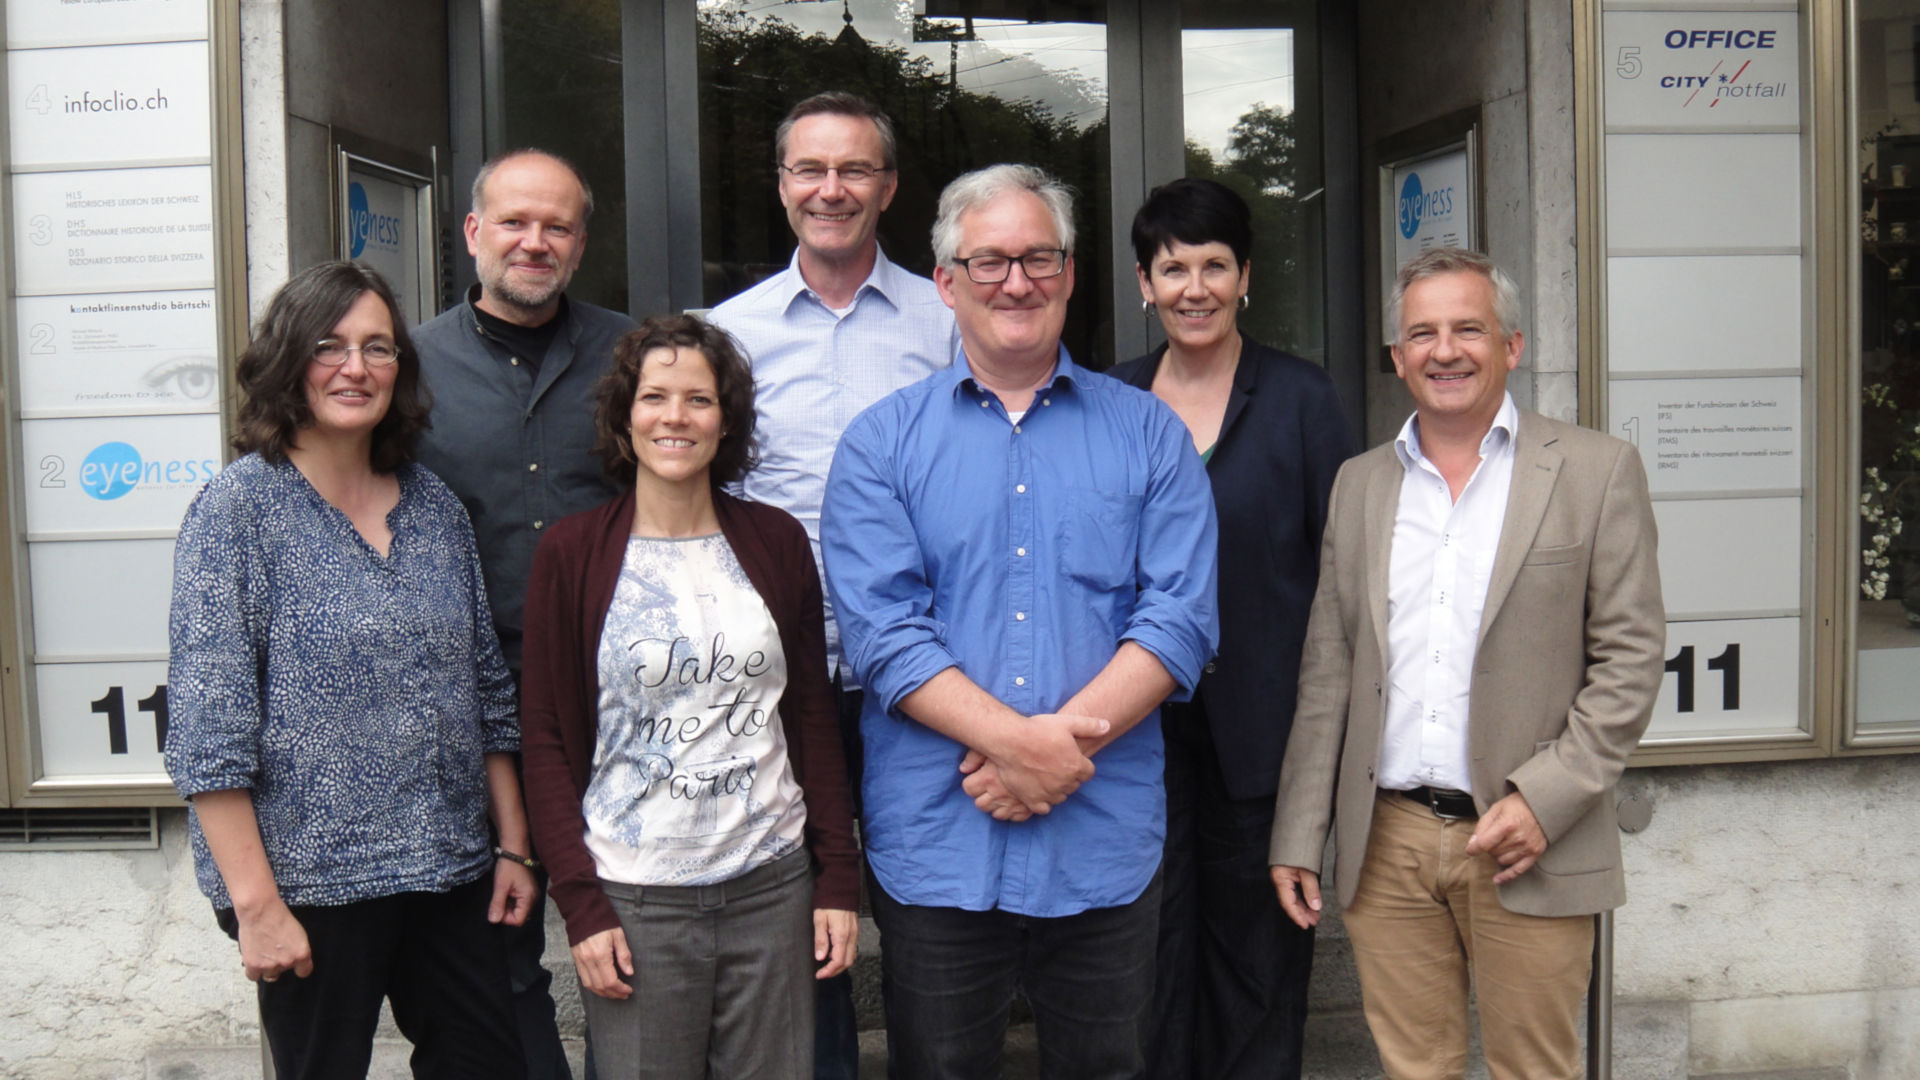 Photo de l’équipe ITMS lors d’un workshop à Berne (septembre 2017). De gauche à droite: Rahel C. Ackermann, Michael Matzke, Monika von Grünigen, Michael Nick, André Barmasse, Anne-Francine Auberson, Markus Peter (président de la commission de l’ITMS).